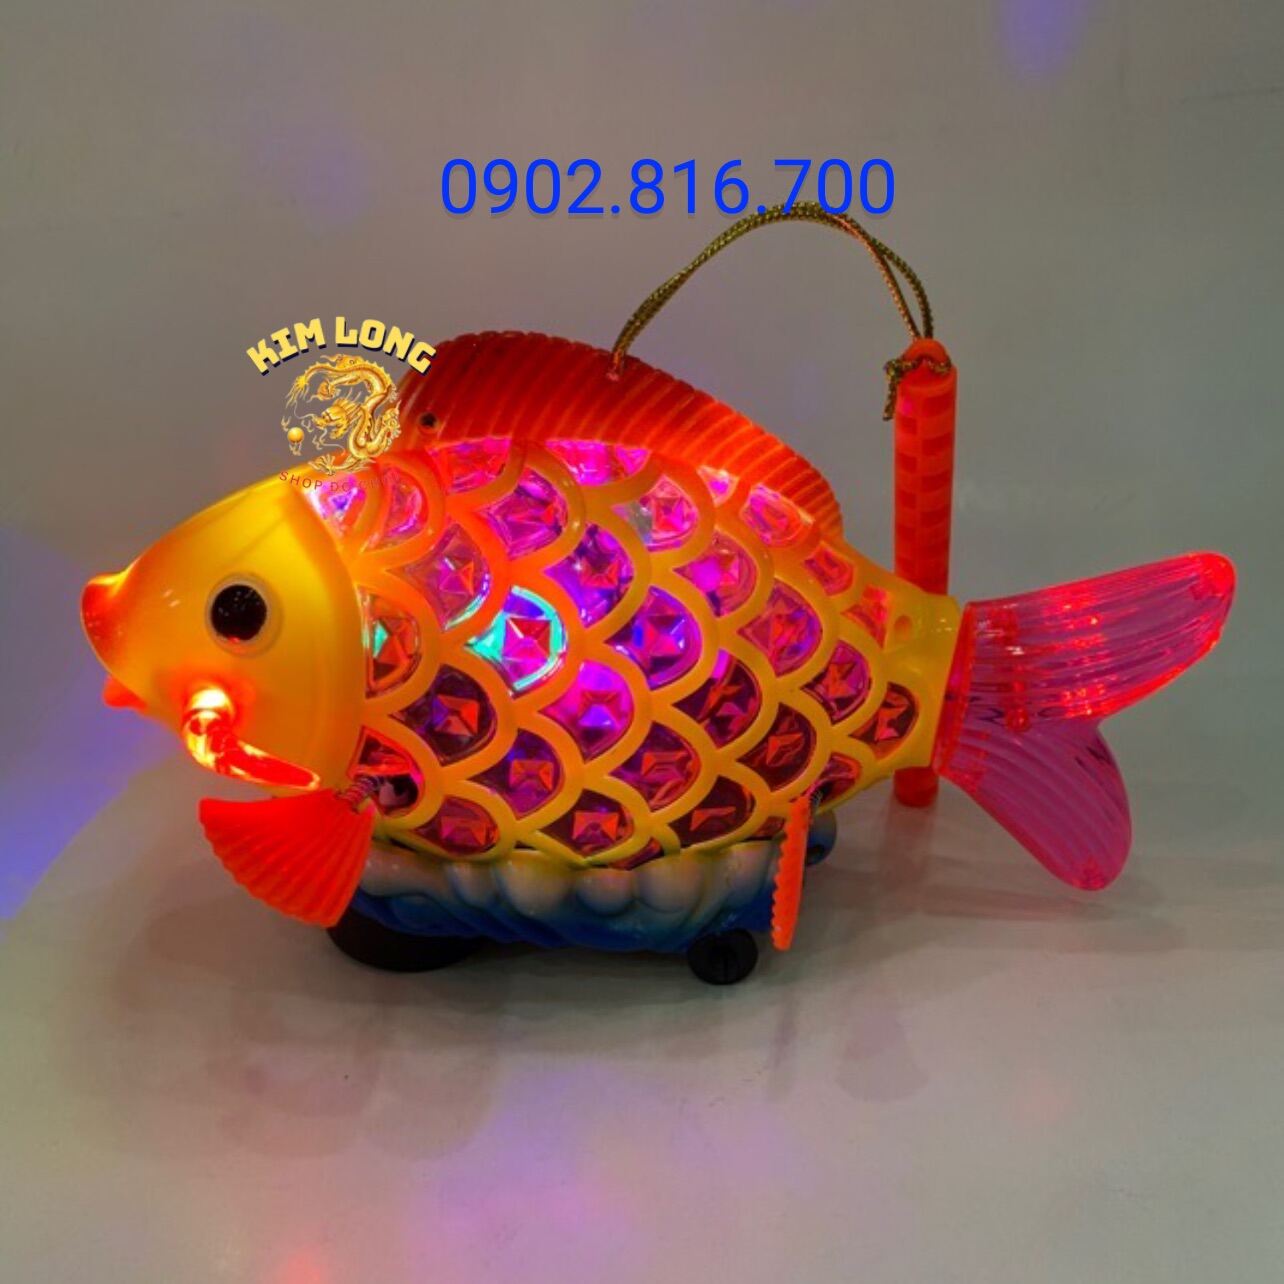 Đồ chơi lồng đèn trung thu cho bé hình cá chép có pin nhạc đèn